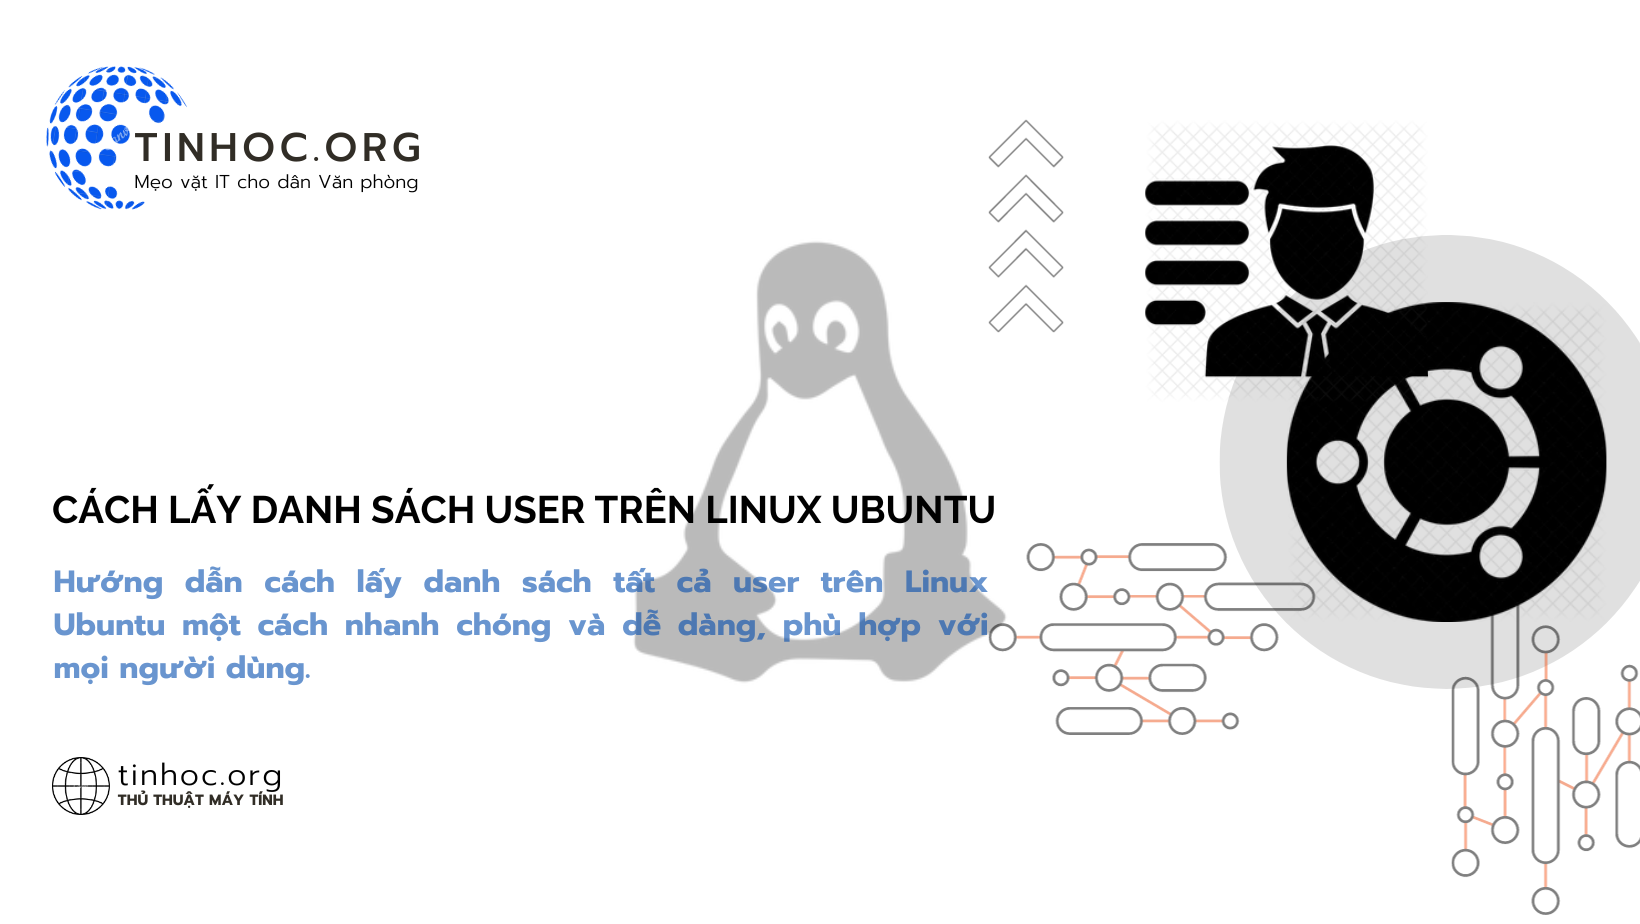 Hướng dẫn cách lấy danh sách tất cả user trên Linux Ubuntu một cách nhanh chóng và dễ dàng, phù hợp với mọi người dùng.